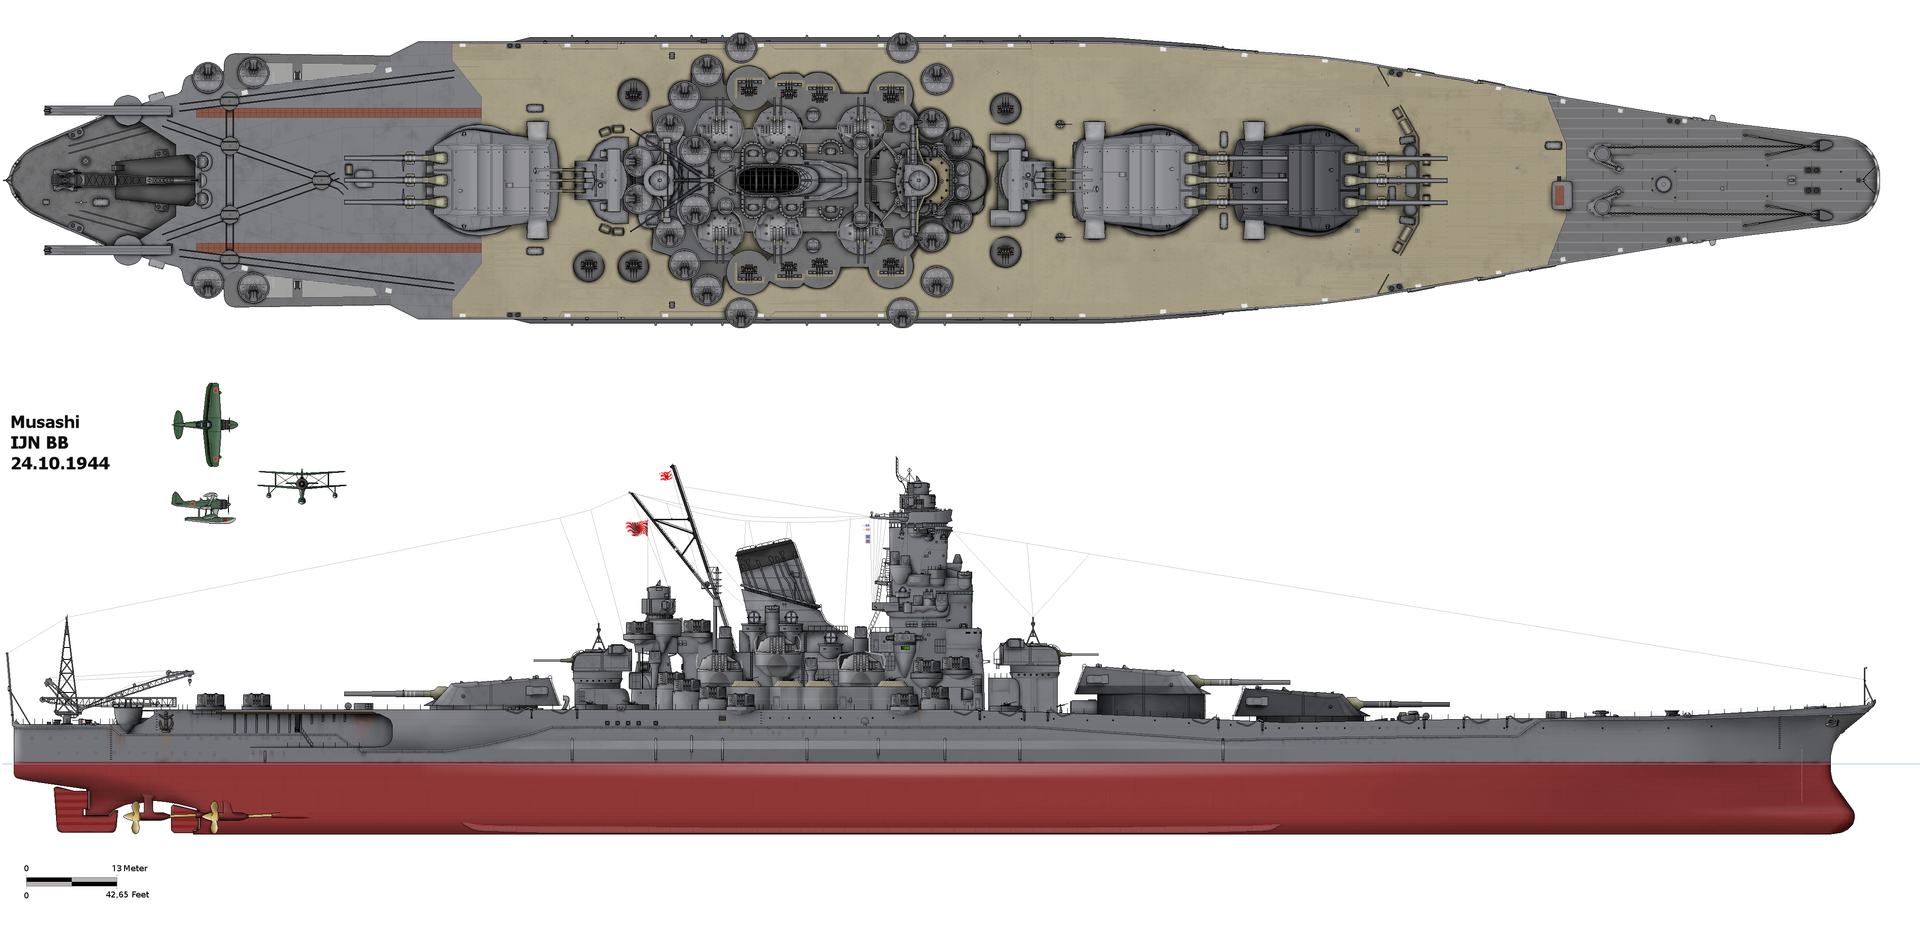 Space Battleship Yamato' invades World of Warships